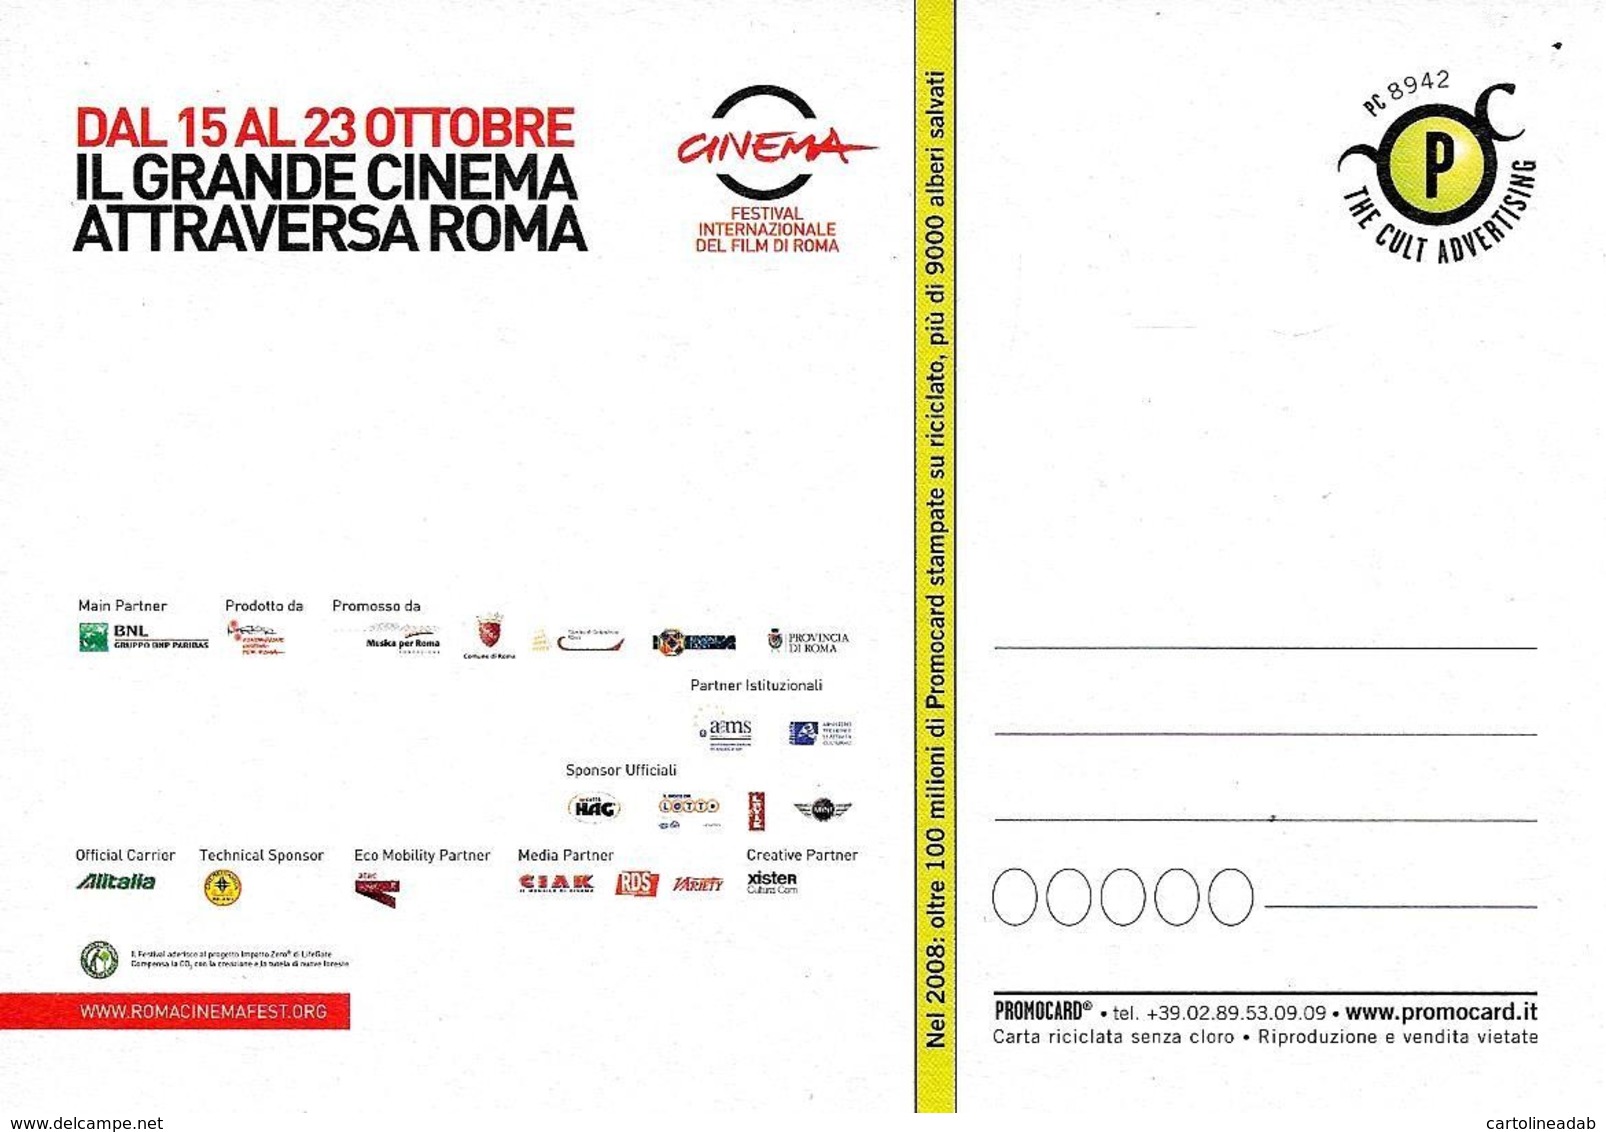 [MD2624] CPM - ROMA - FESTIVAL INTERNAZIONALE DEL CINEMA - PROMOCARD 8942 - NV - Fumetti